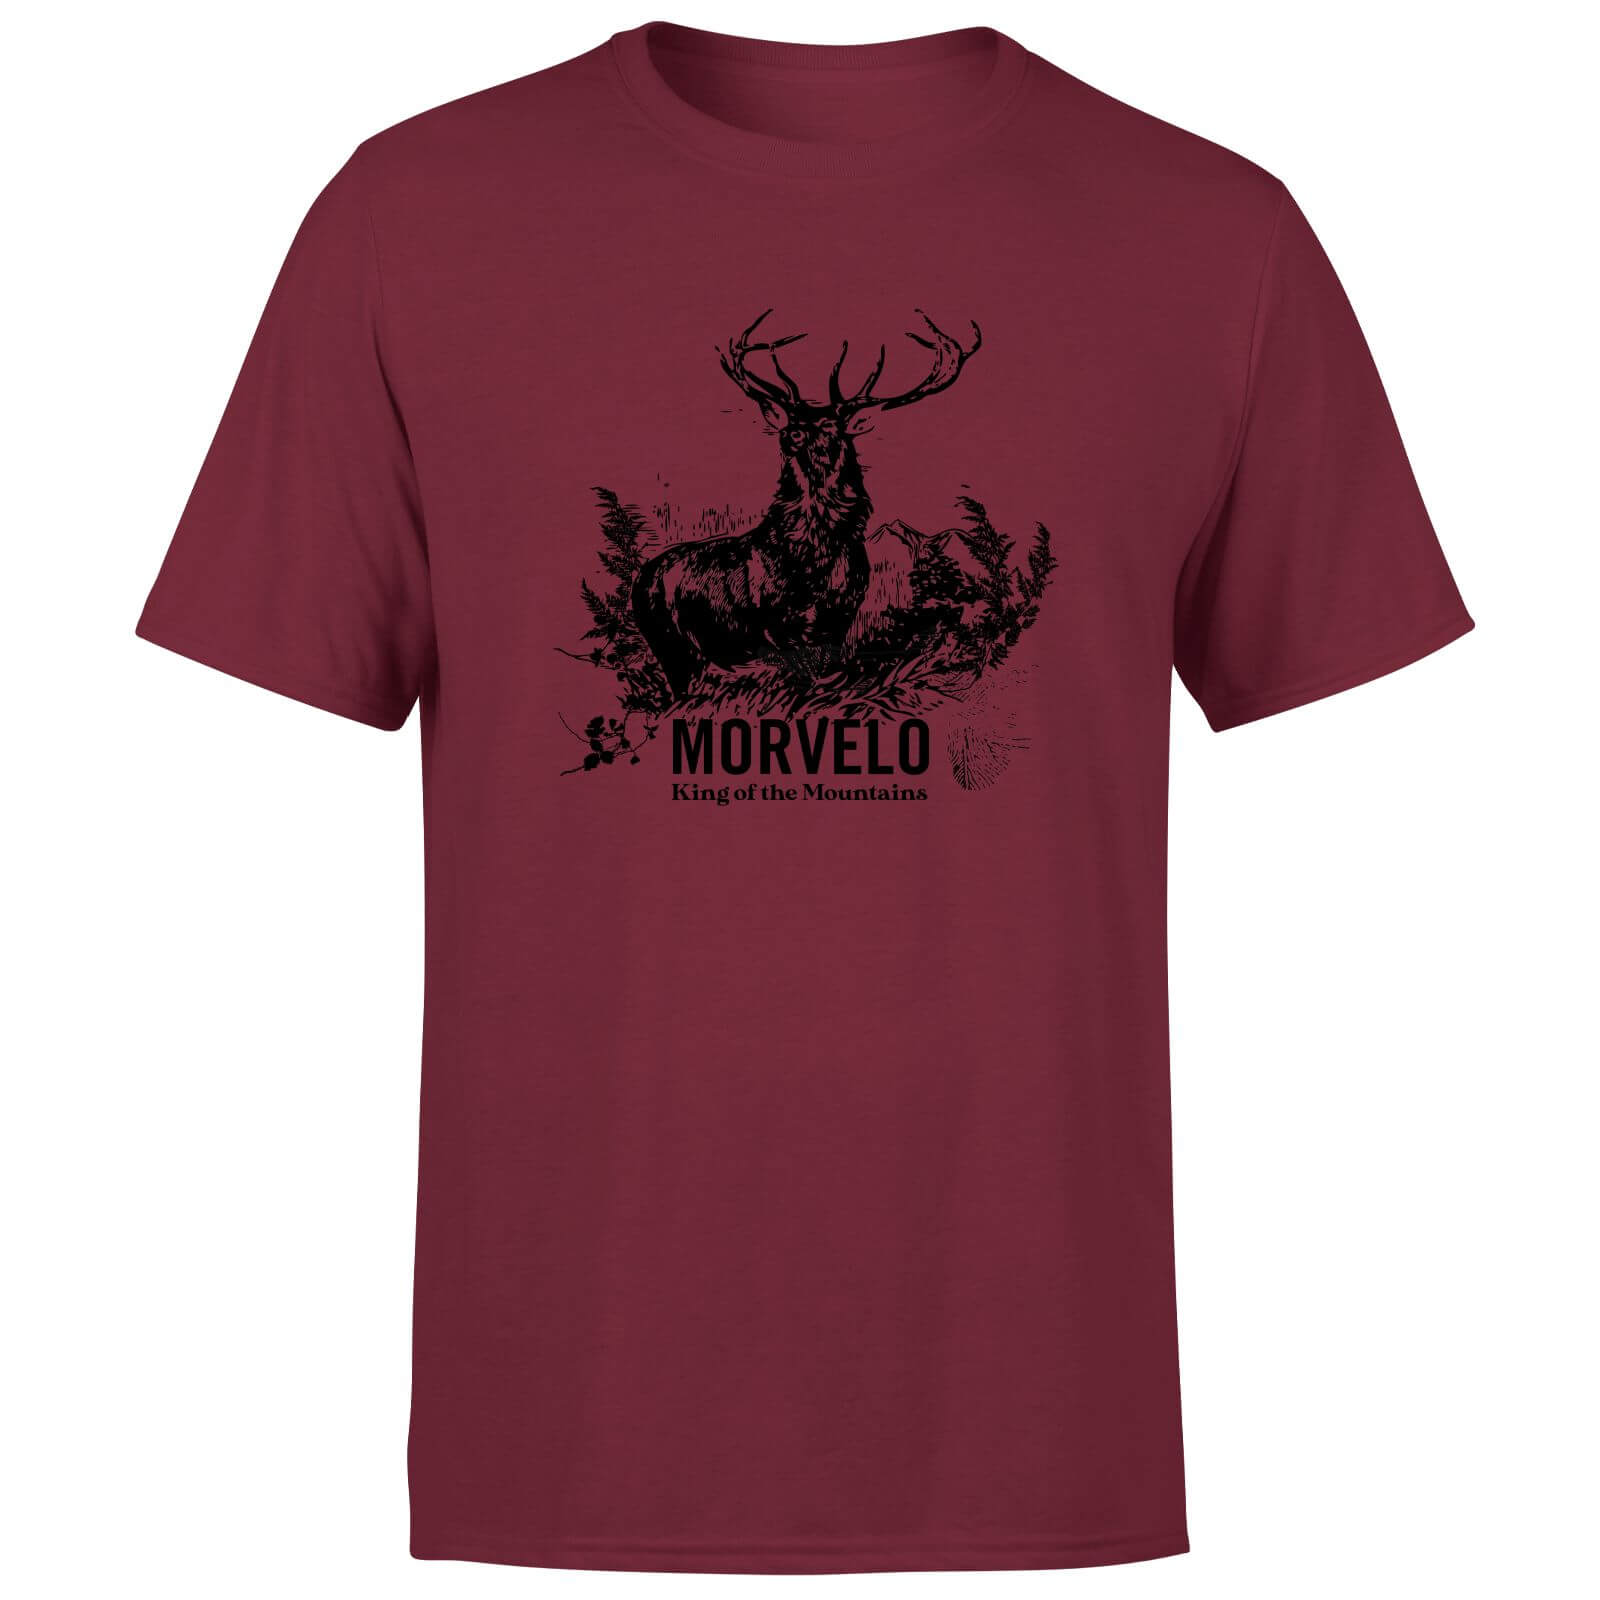 Morvelo King Men's T-Shirt - Burgundy - S - Burgundy